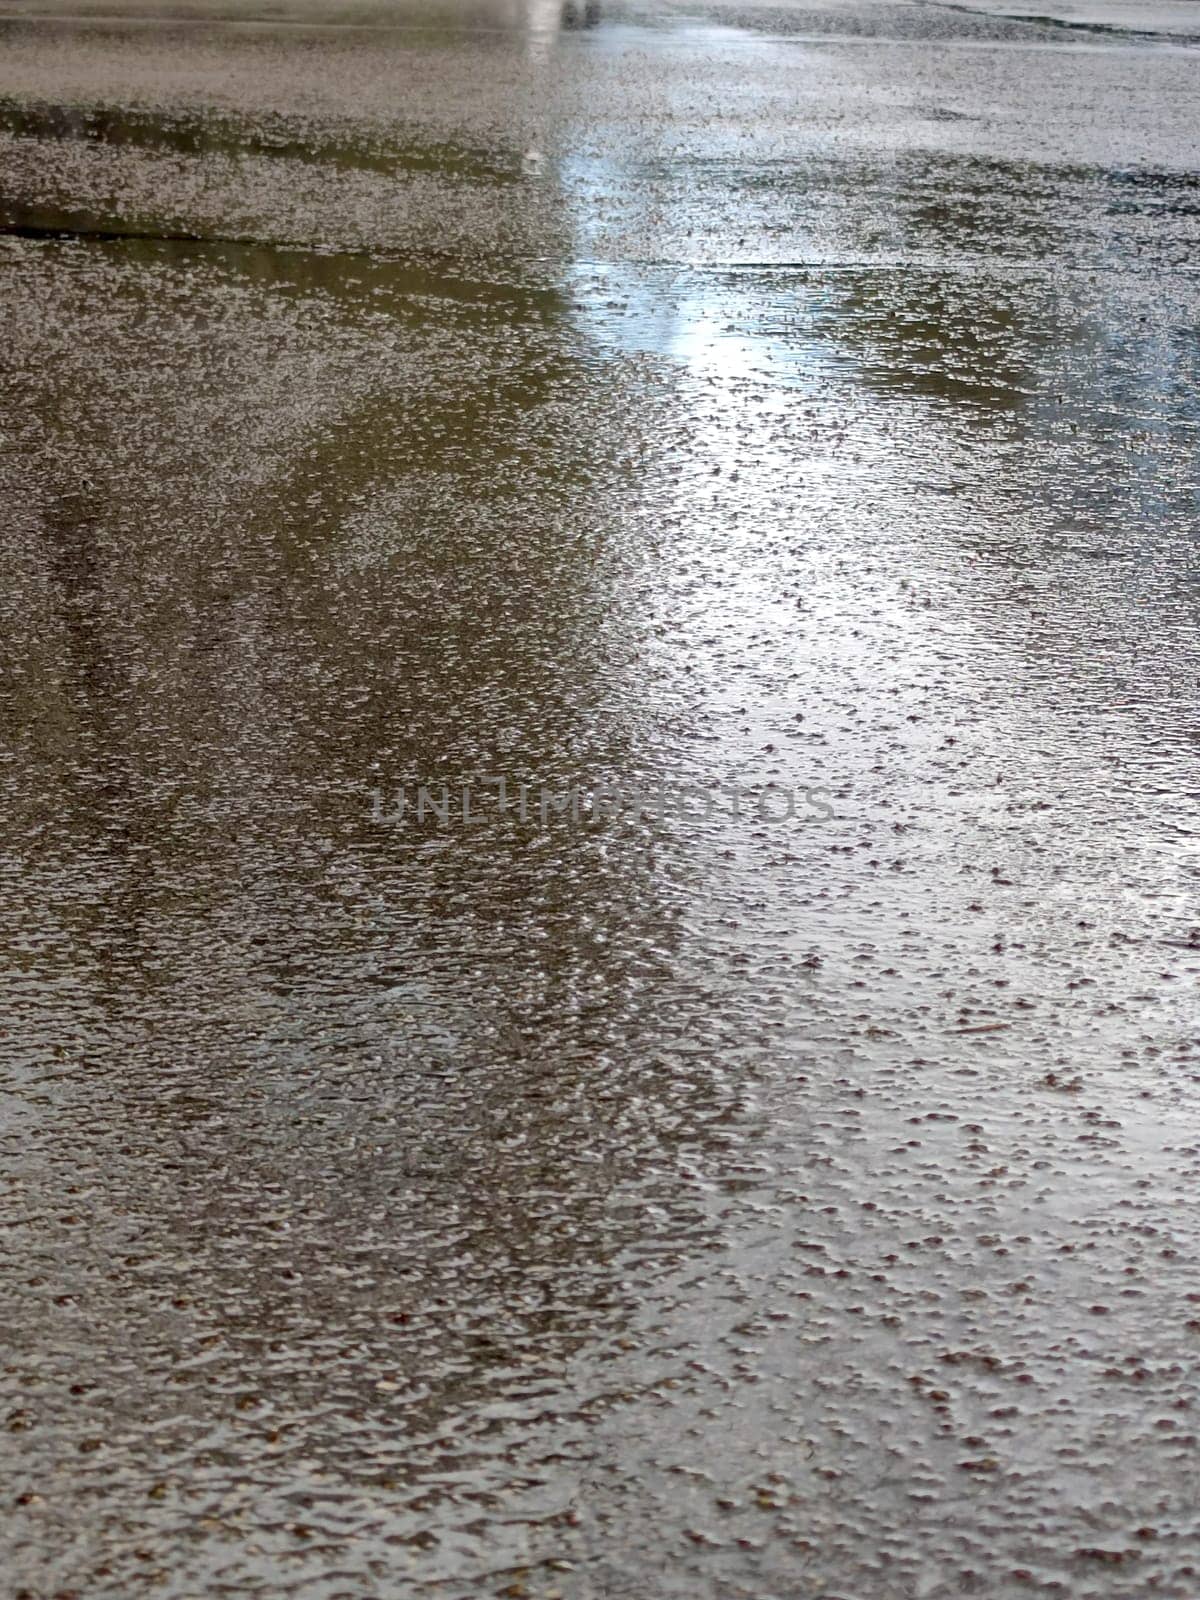 wet asphalt surface reflecting light after rainfall by Annado